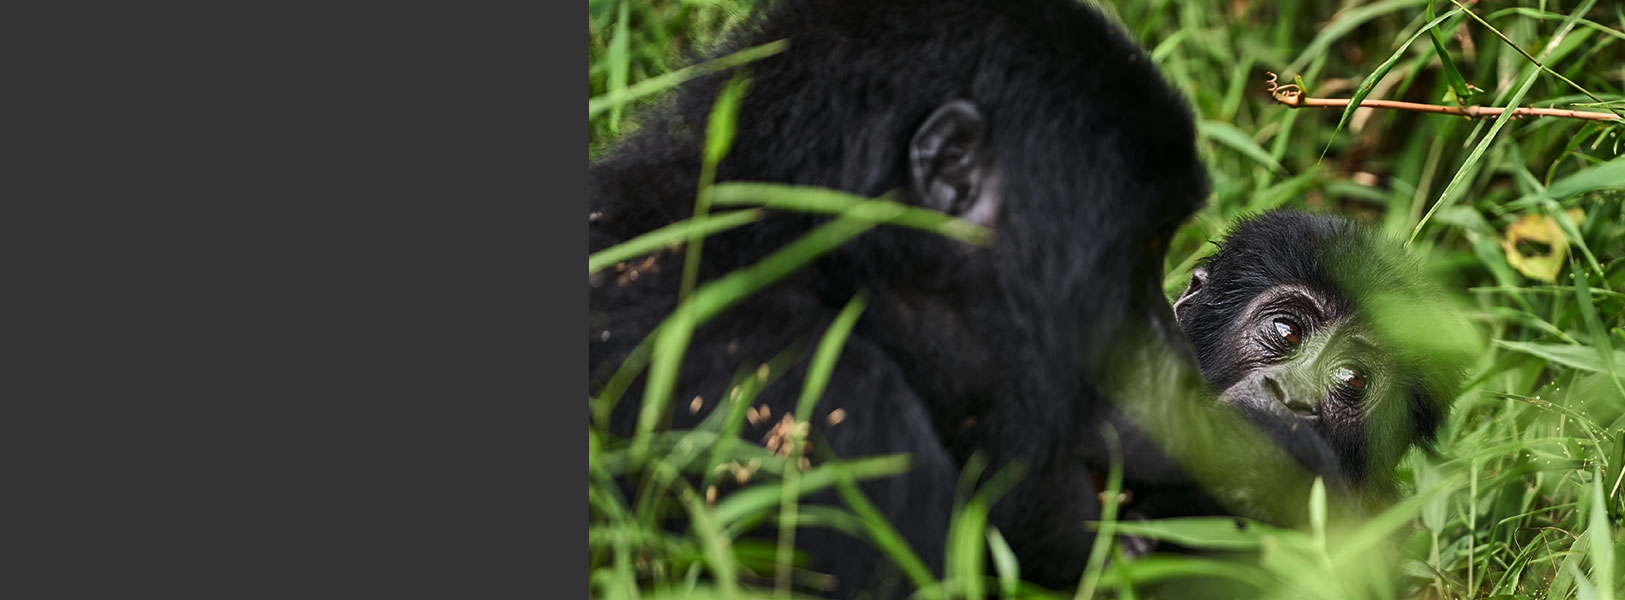 mountain gorillas in bwindi forest